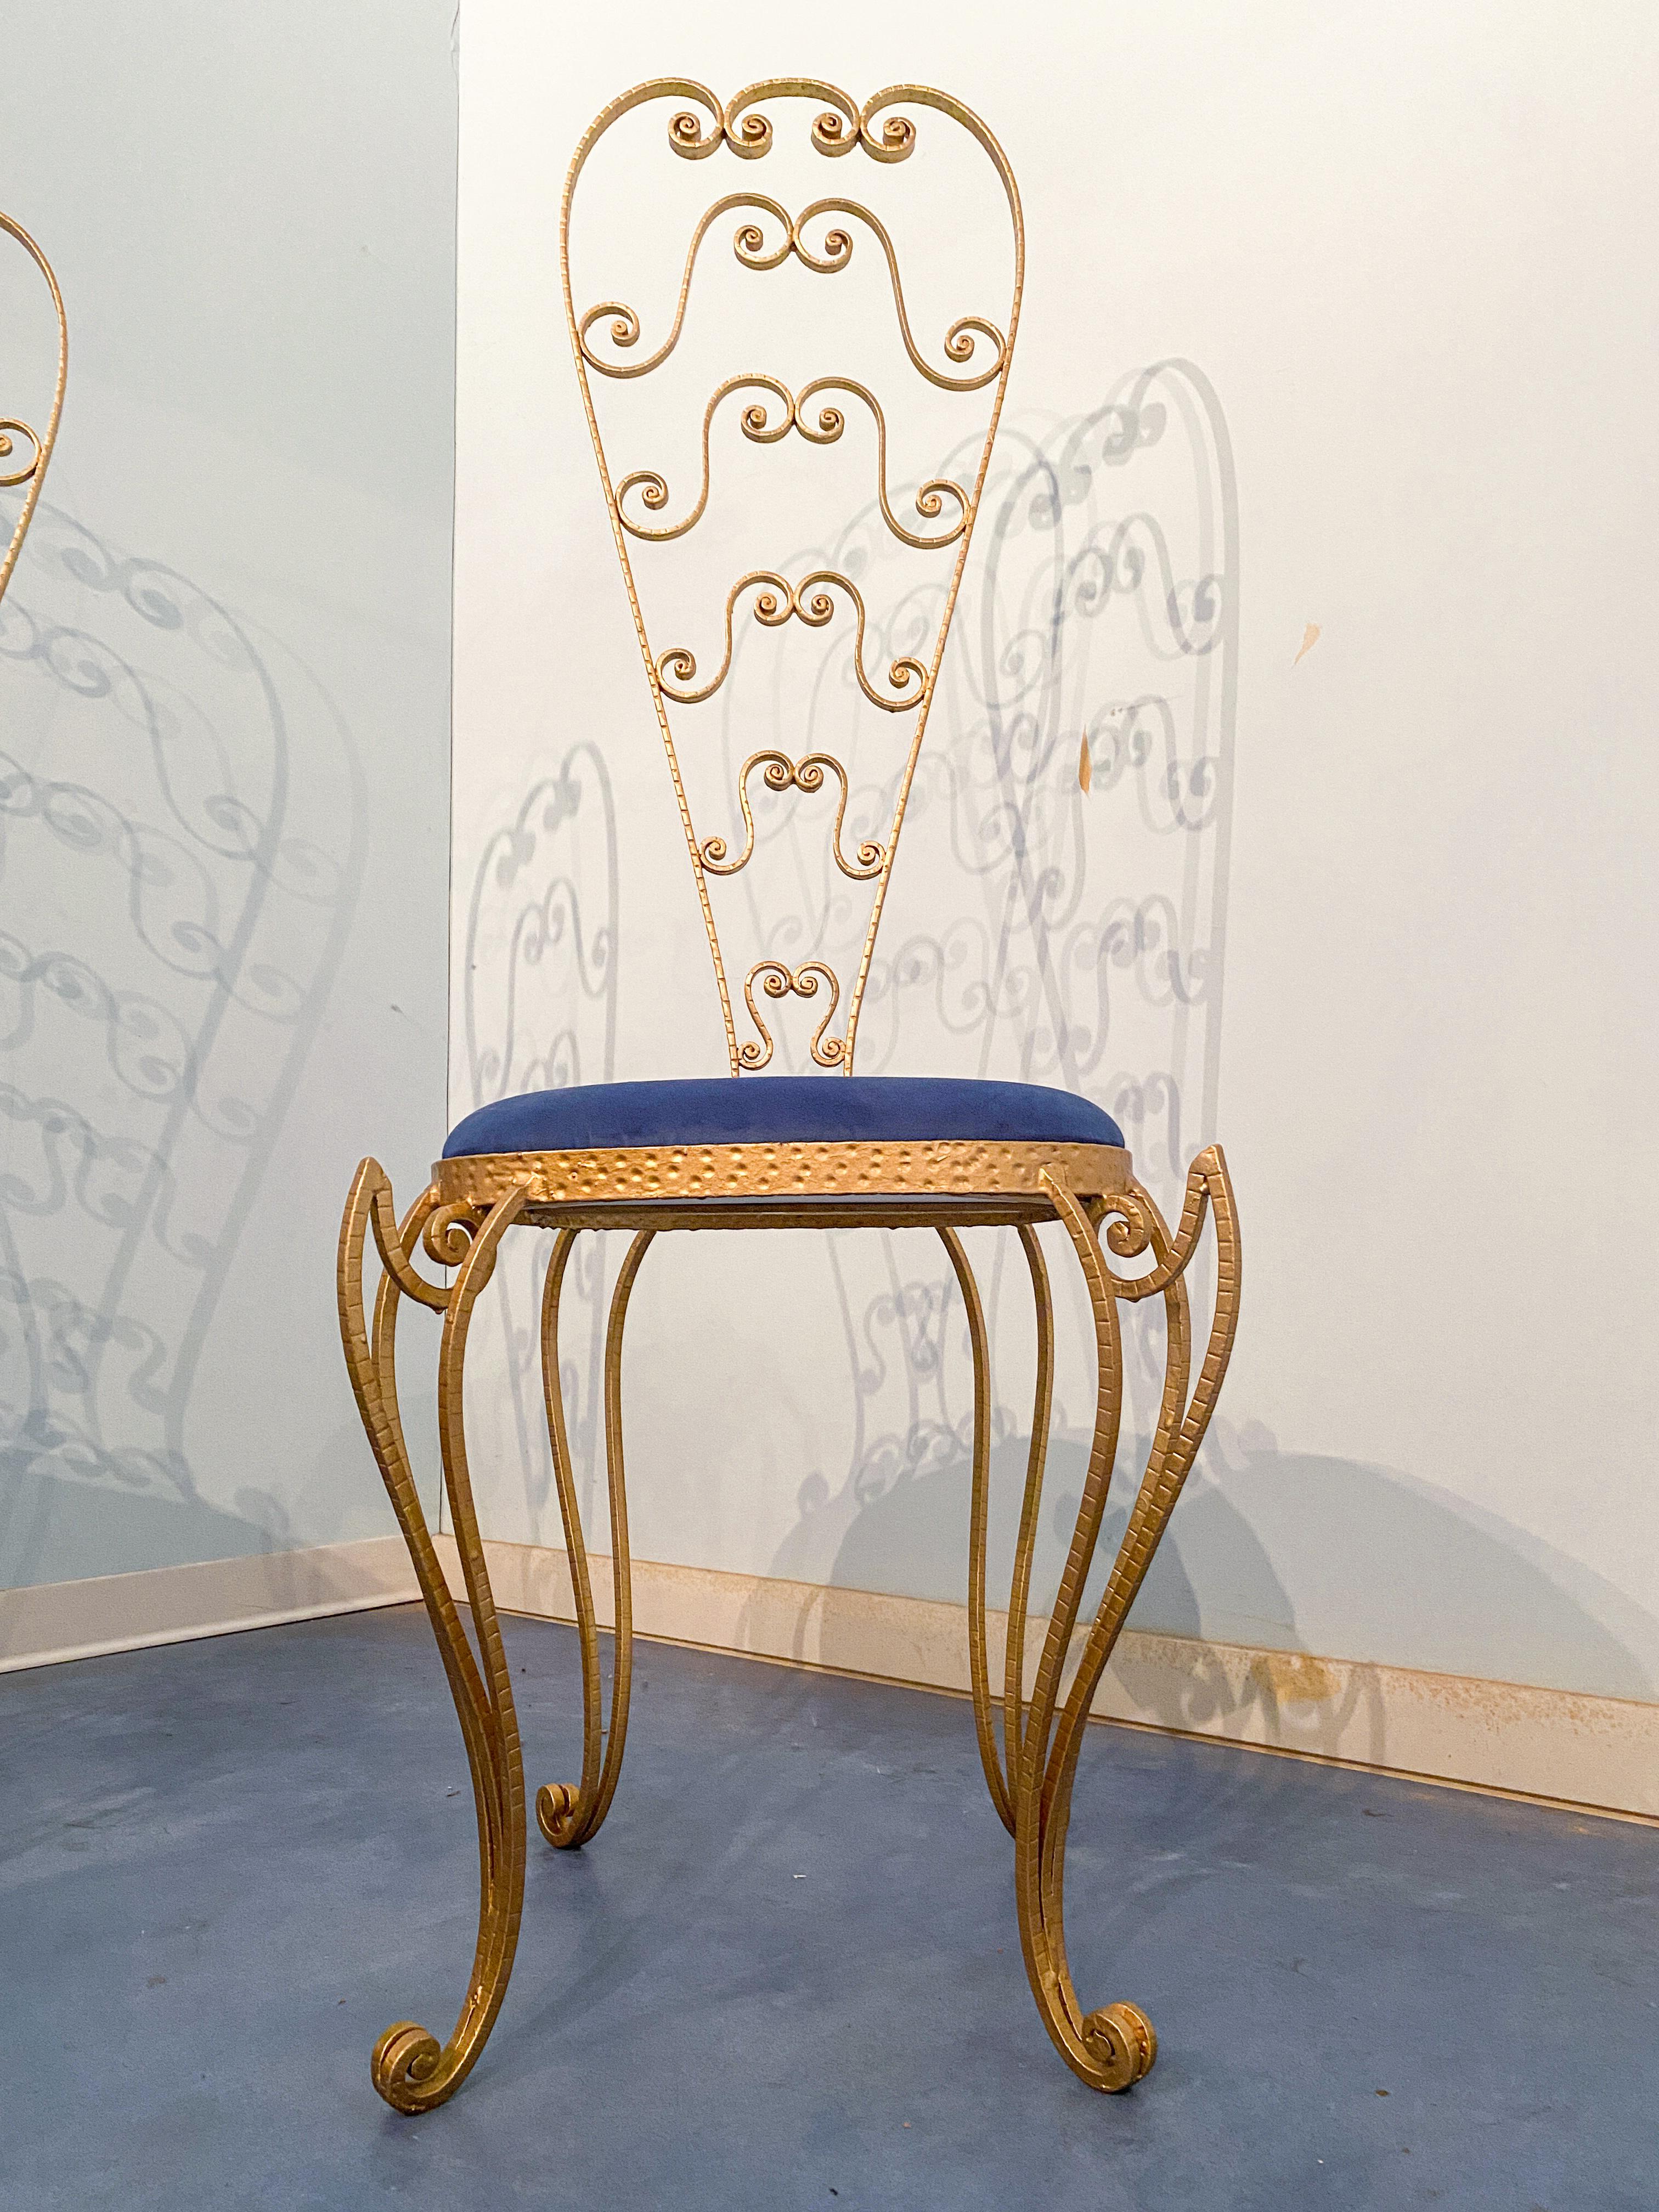 Paire de superbes chaises italiennes de style moderne du milieu du siècle, ne cherchez pas plus loin que ces chaises-lavabos de Luigi Colli. Fabriquées en fer doré et dotées d'un dossier haut, ces chaises sont aussi belles que fonctionnelles.